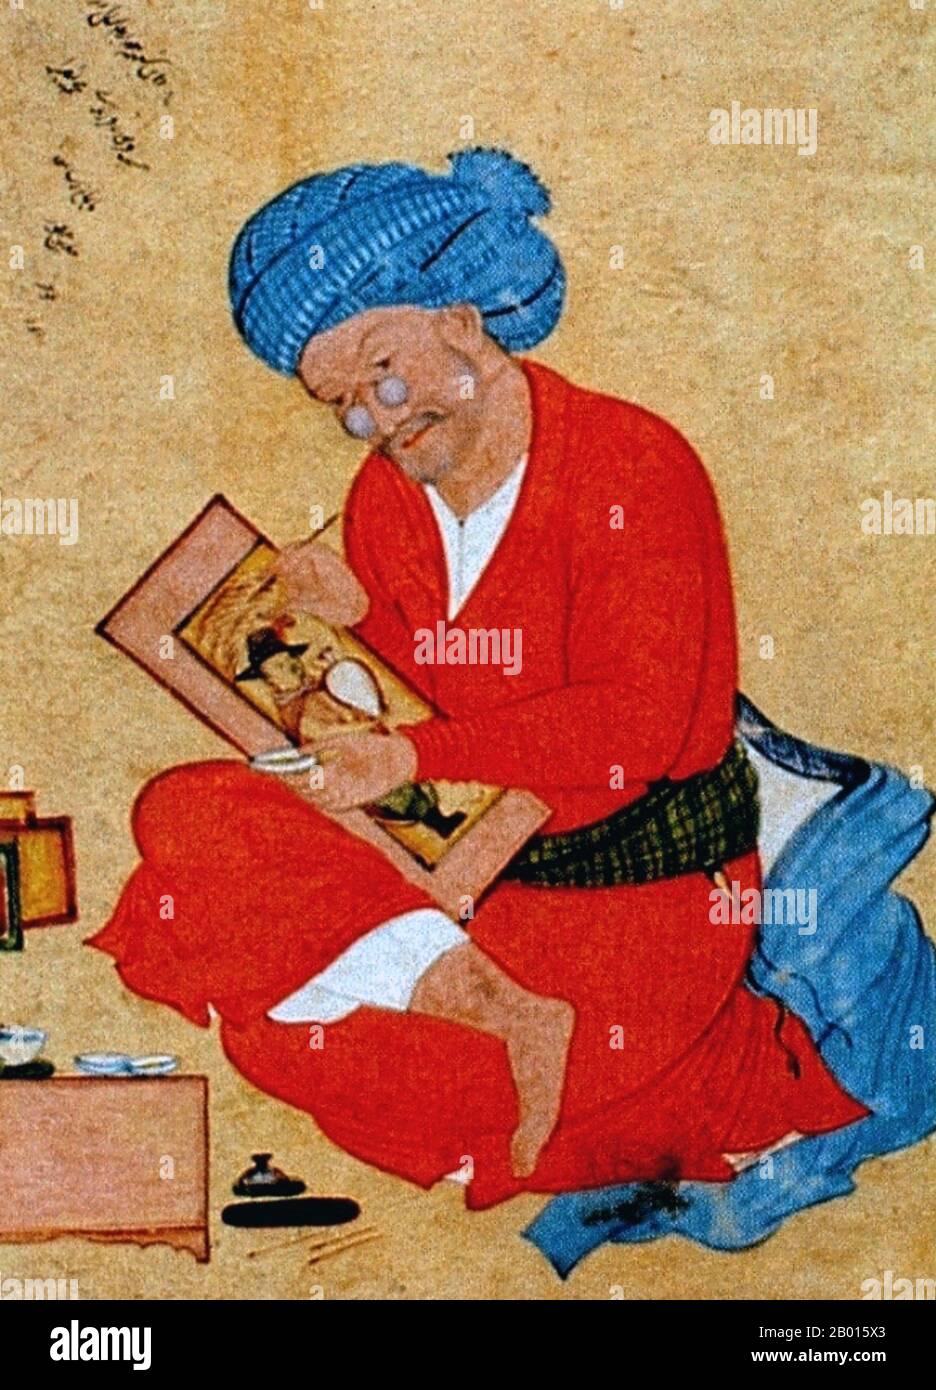 Iran: Portrait du miniaturiste perse Riza Abbasi (c.1565-1635) par son élève Mu'in, 1673. Riza Abbasi, Riza yi-Abbasi ou Reza-e Abbasi, également AQA Riza ou Āqā Riżā Kāshānī (c. 1565–1635) était le principal miniaturiste persan de l'école Isfahan pendant la période Safavide plus tard, passant la majeure partie de sa carrière à travailler pour Shah Abbas I (r.1587-1629). Il est considéré comme le dernier grand maître de la miniature perse, mieux connu pour ses miniatures uniques pour muraqqa ou albums, en particulier les figures uniques de jeunes magnifiques. Banque D'Images